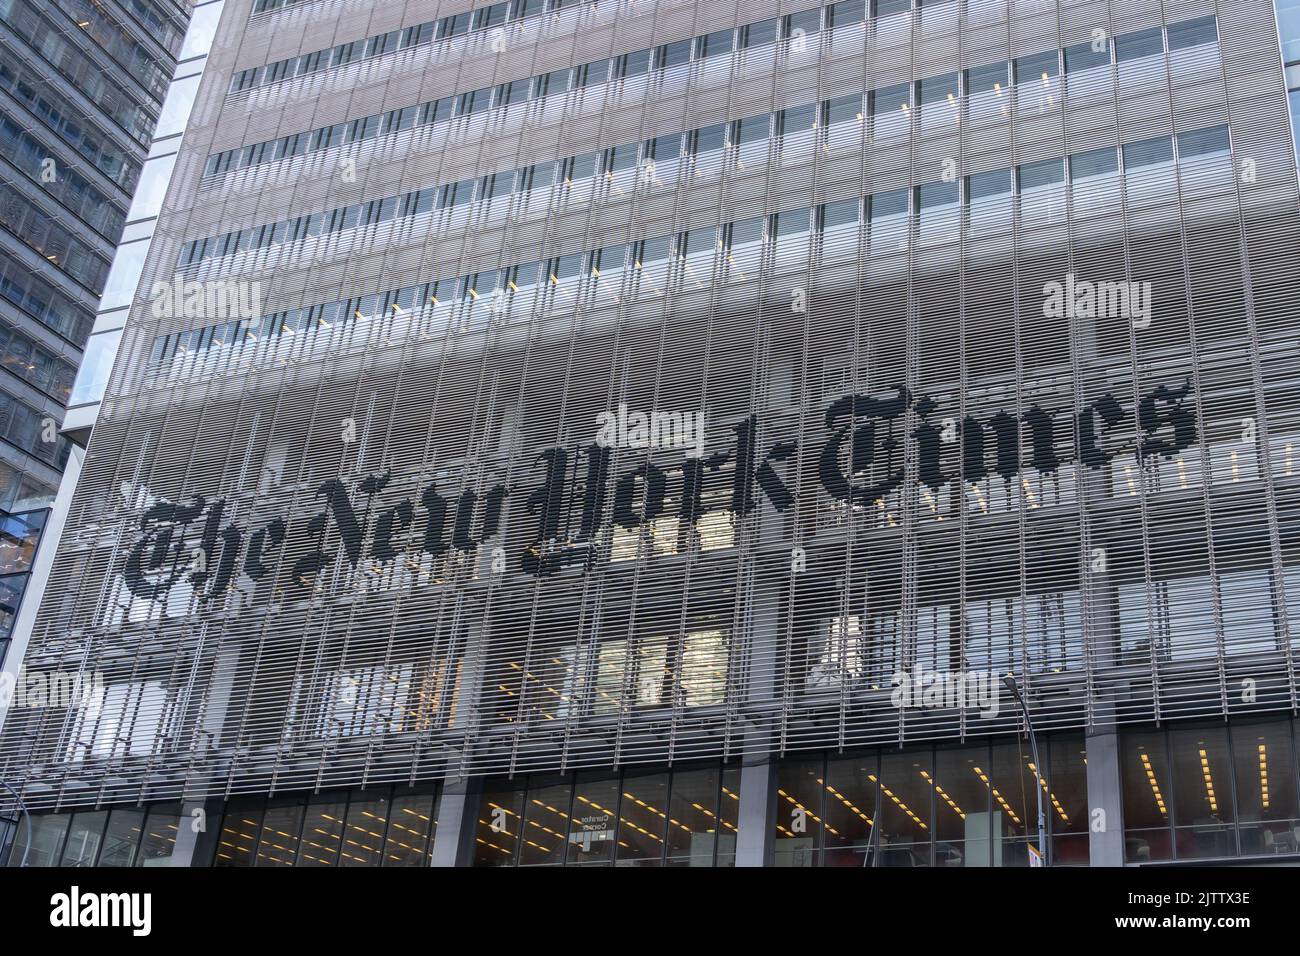 New York, NY, USA - August 17, 2022: New York Times Company headquarters in New York, NY, USA. Stock Photo